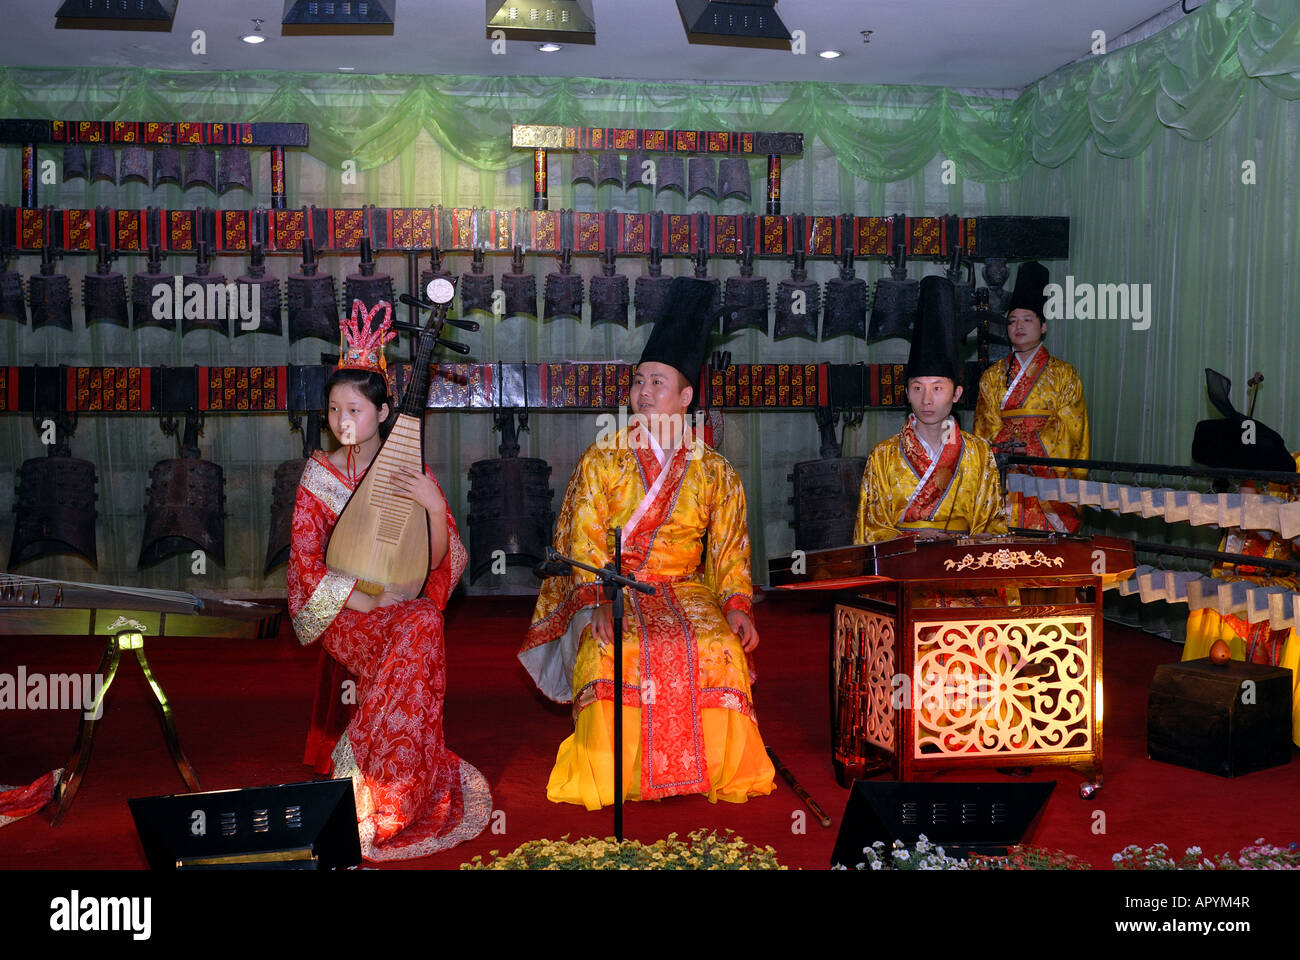 Musiciens dans le sous-sol de l'Empereur Jaune s naissance lieu Palace Huangdi Zhengzhou City Henan Province Chine Asie Banque D'Images